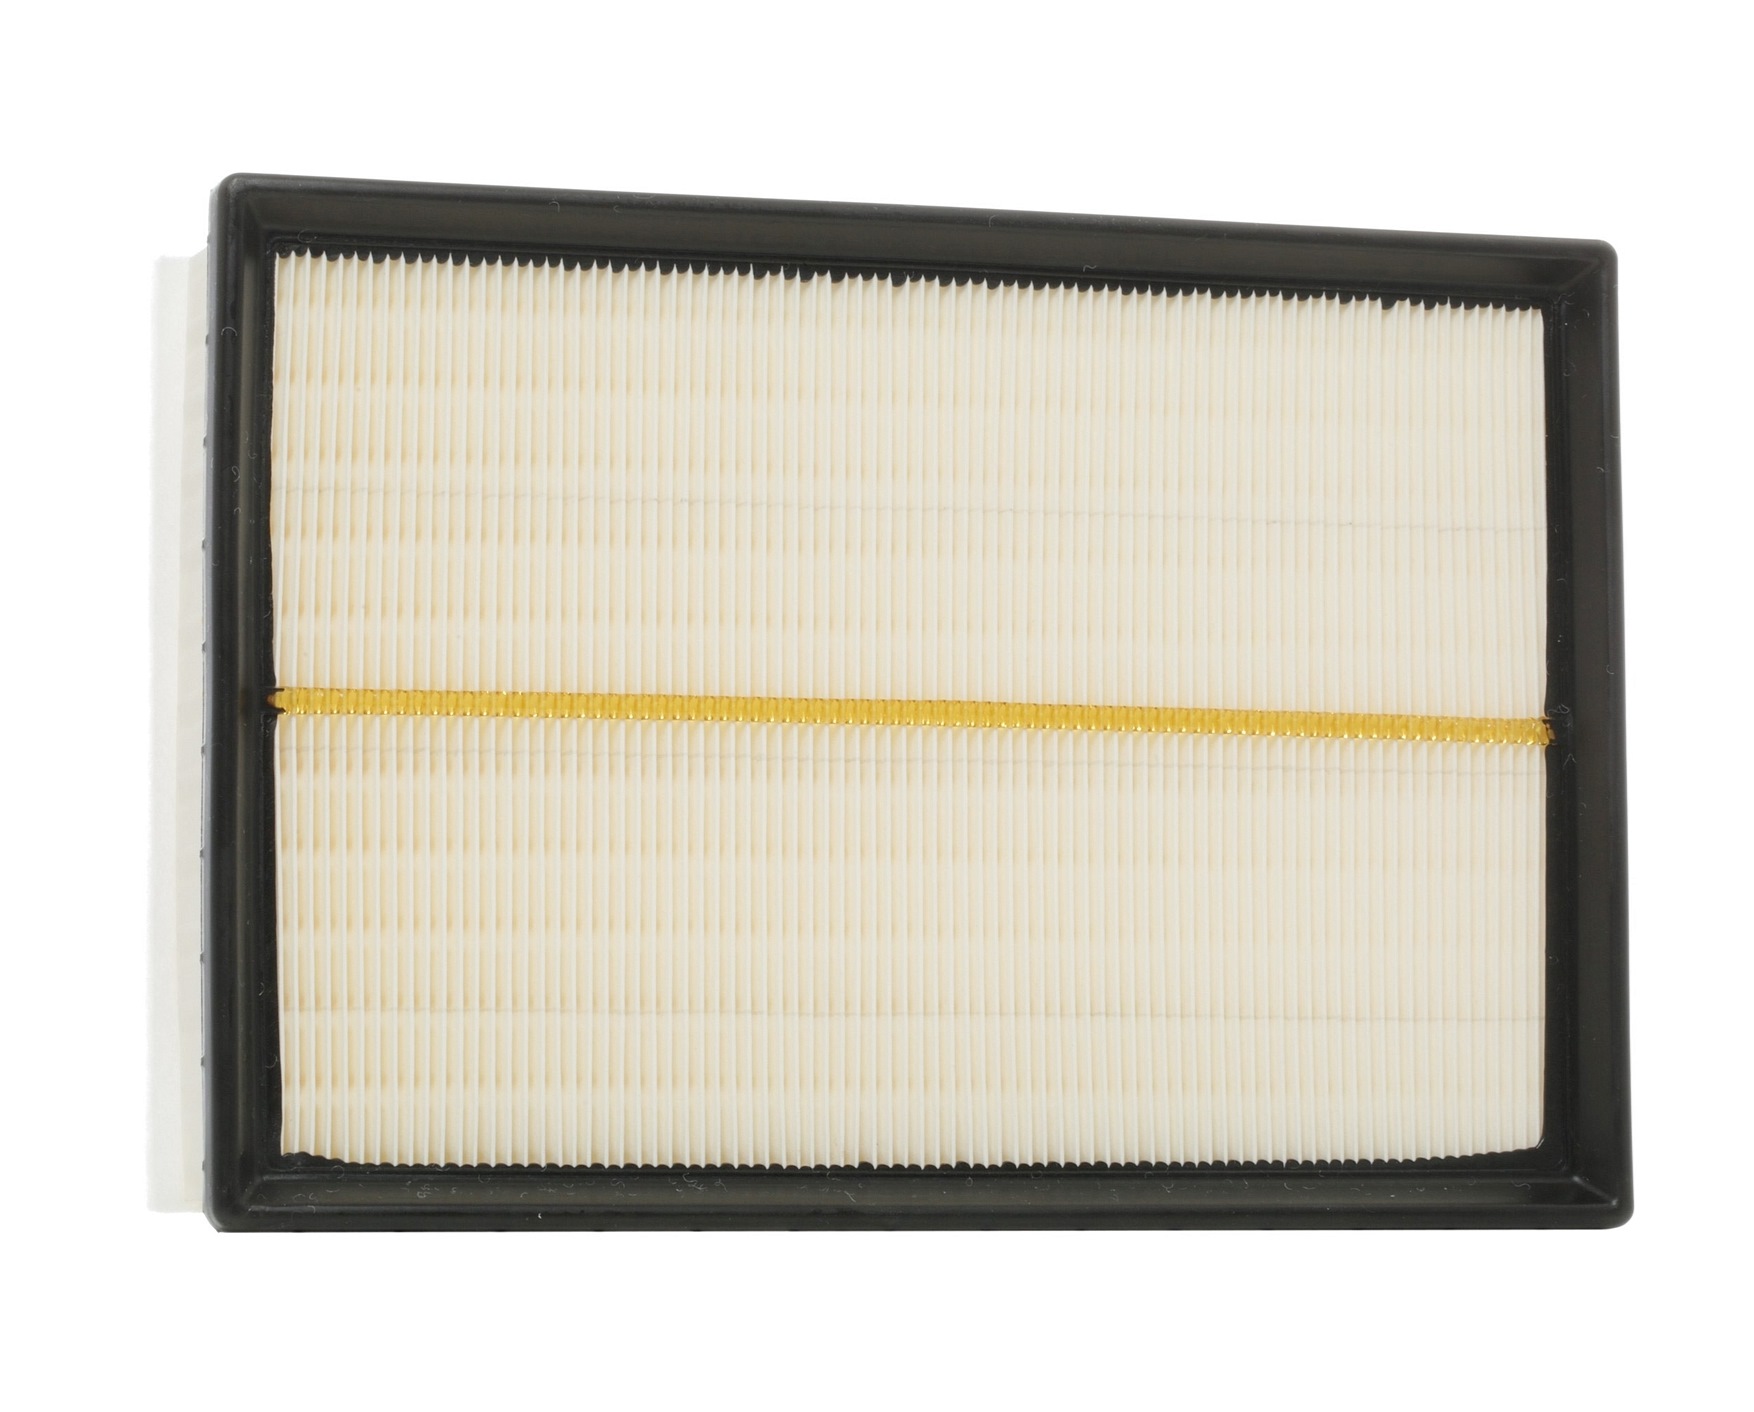 RIDEX 8A0401 Filtre à air Cartouche filtrante, avec préfiltre Renault de qualité d'origine